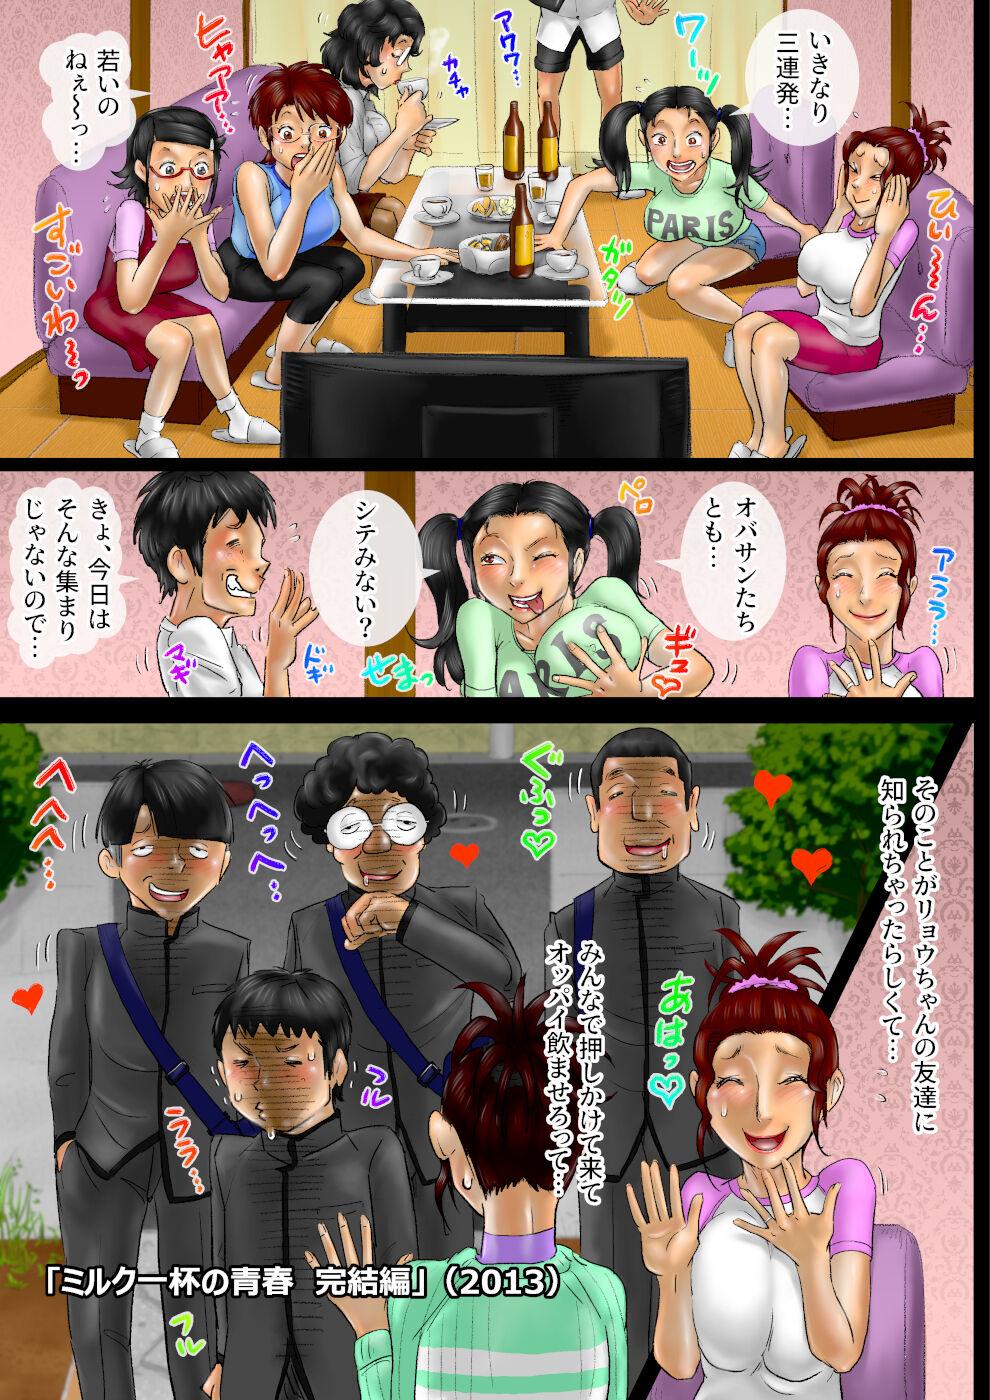 Perrito Sākuru hossoku 10 shūnenkinen obasan kyara zadan-kai 18 Porn - Page 8